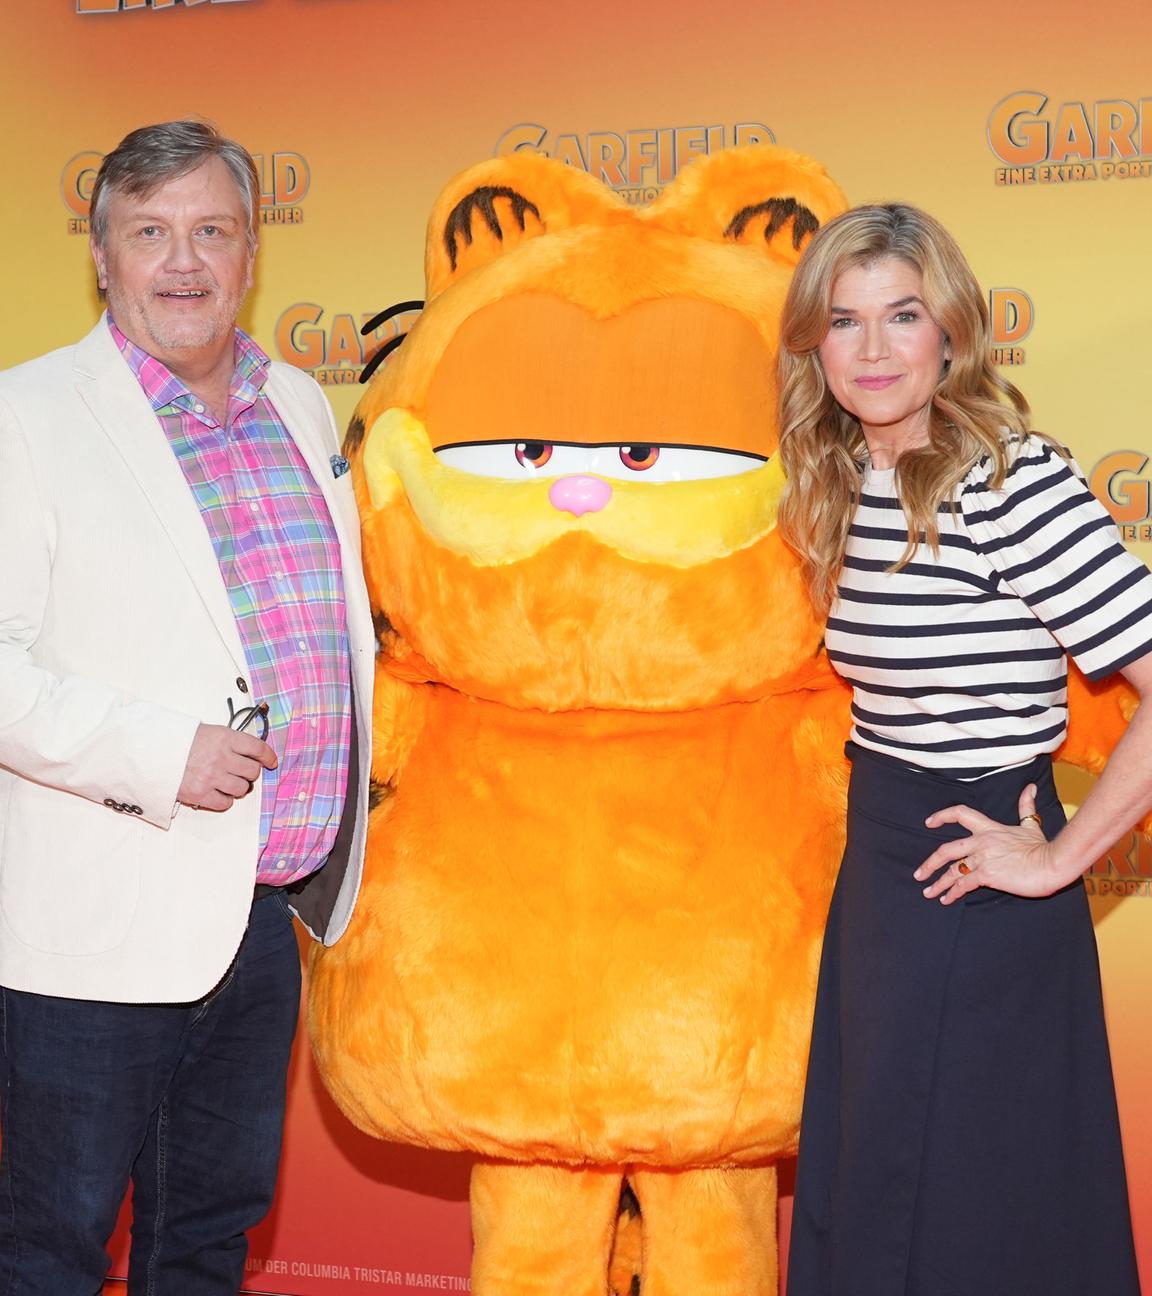 Hape Kerkeling und Anke Engelke posieren bei der Filmpremiere mit Garfield